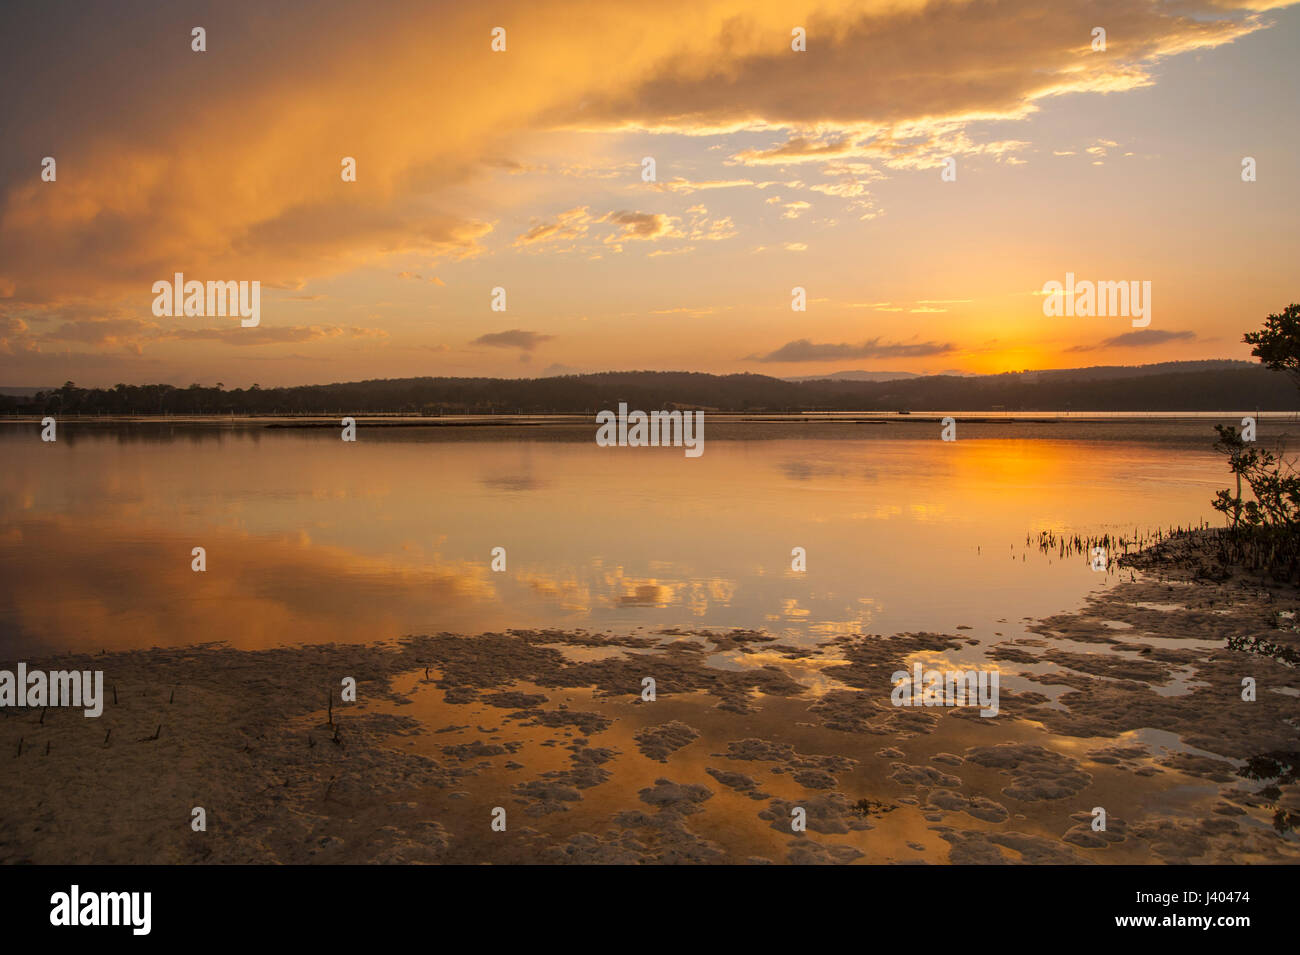 Merimbula lago ha spesso magici tramonti. Come la marea riempie la concavità a sinistra sulla sabbia i riflessi delle nuvole appaiono. Foto Stock